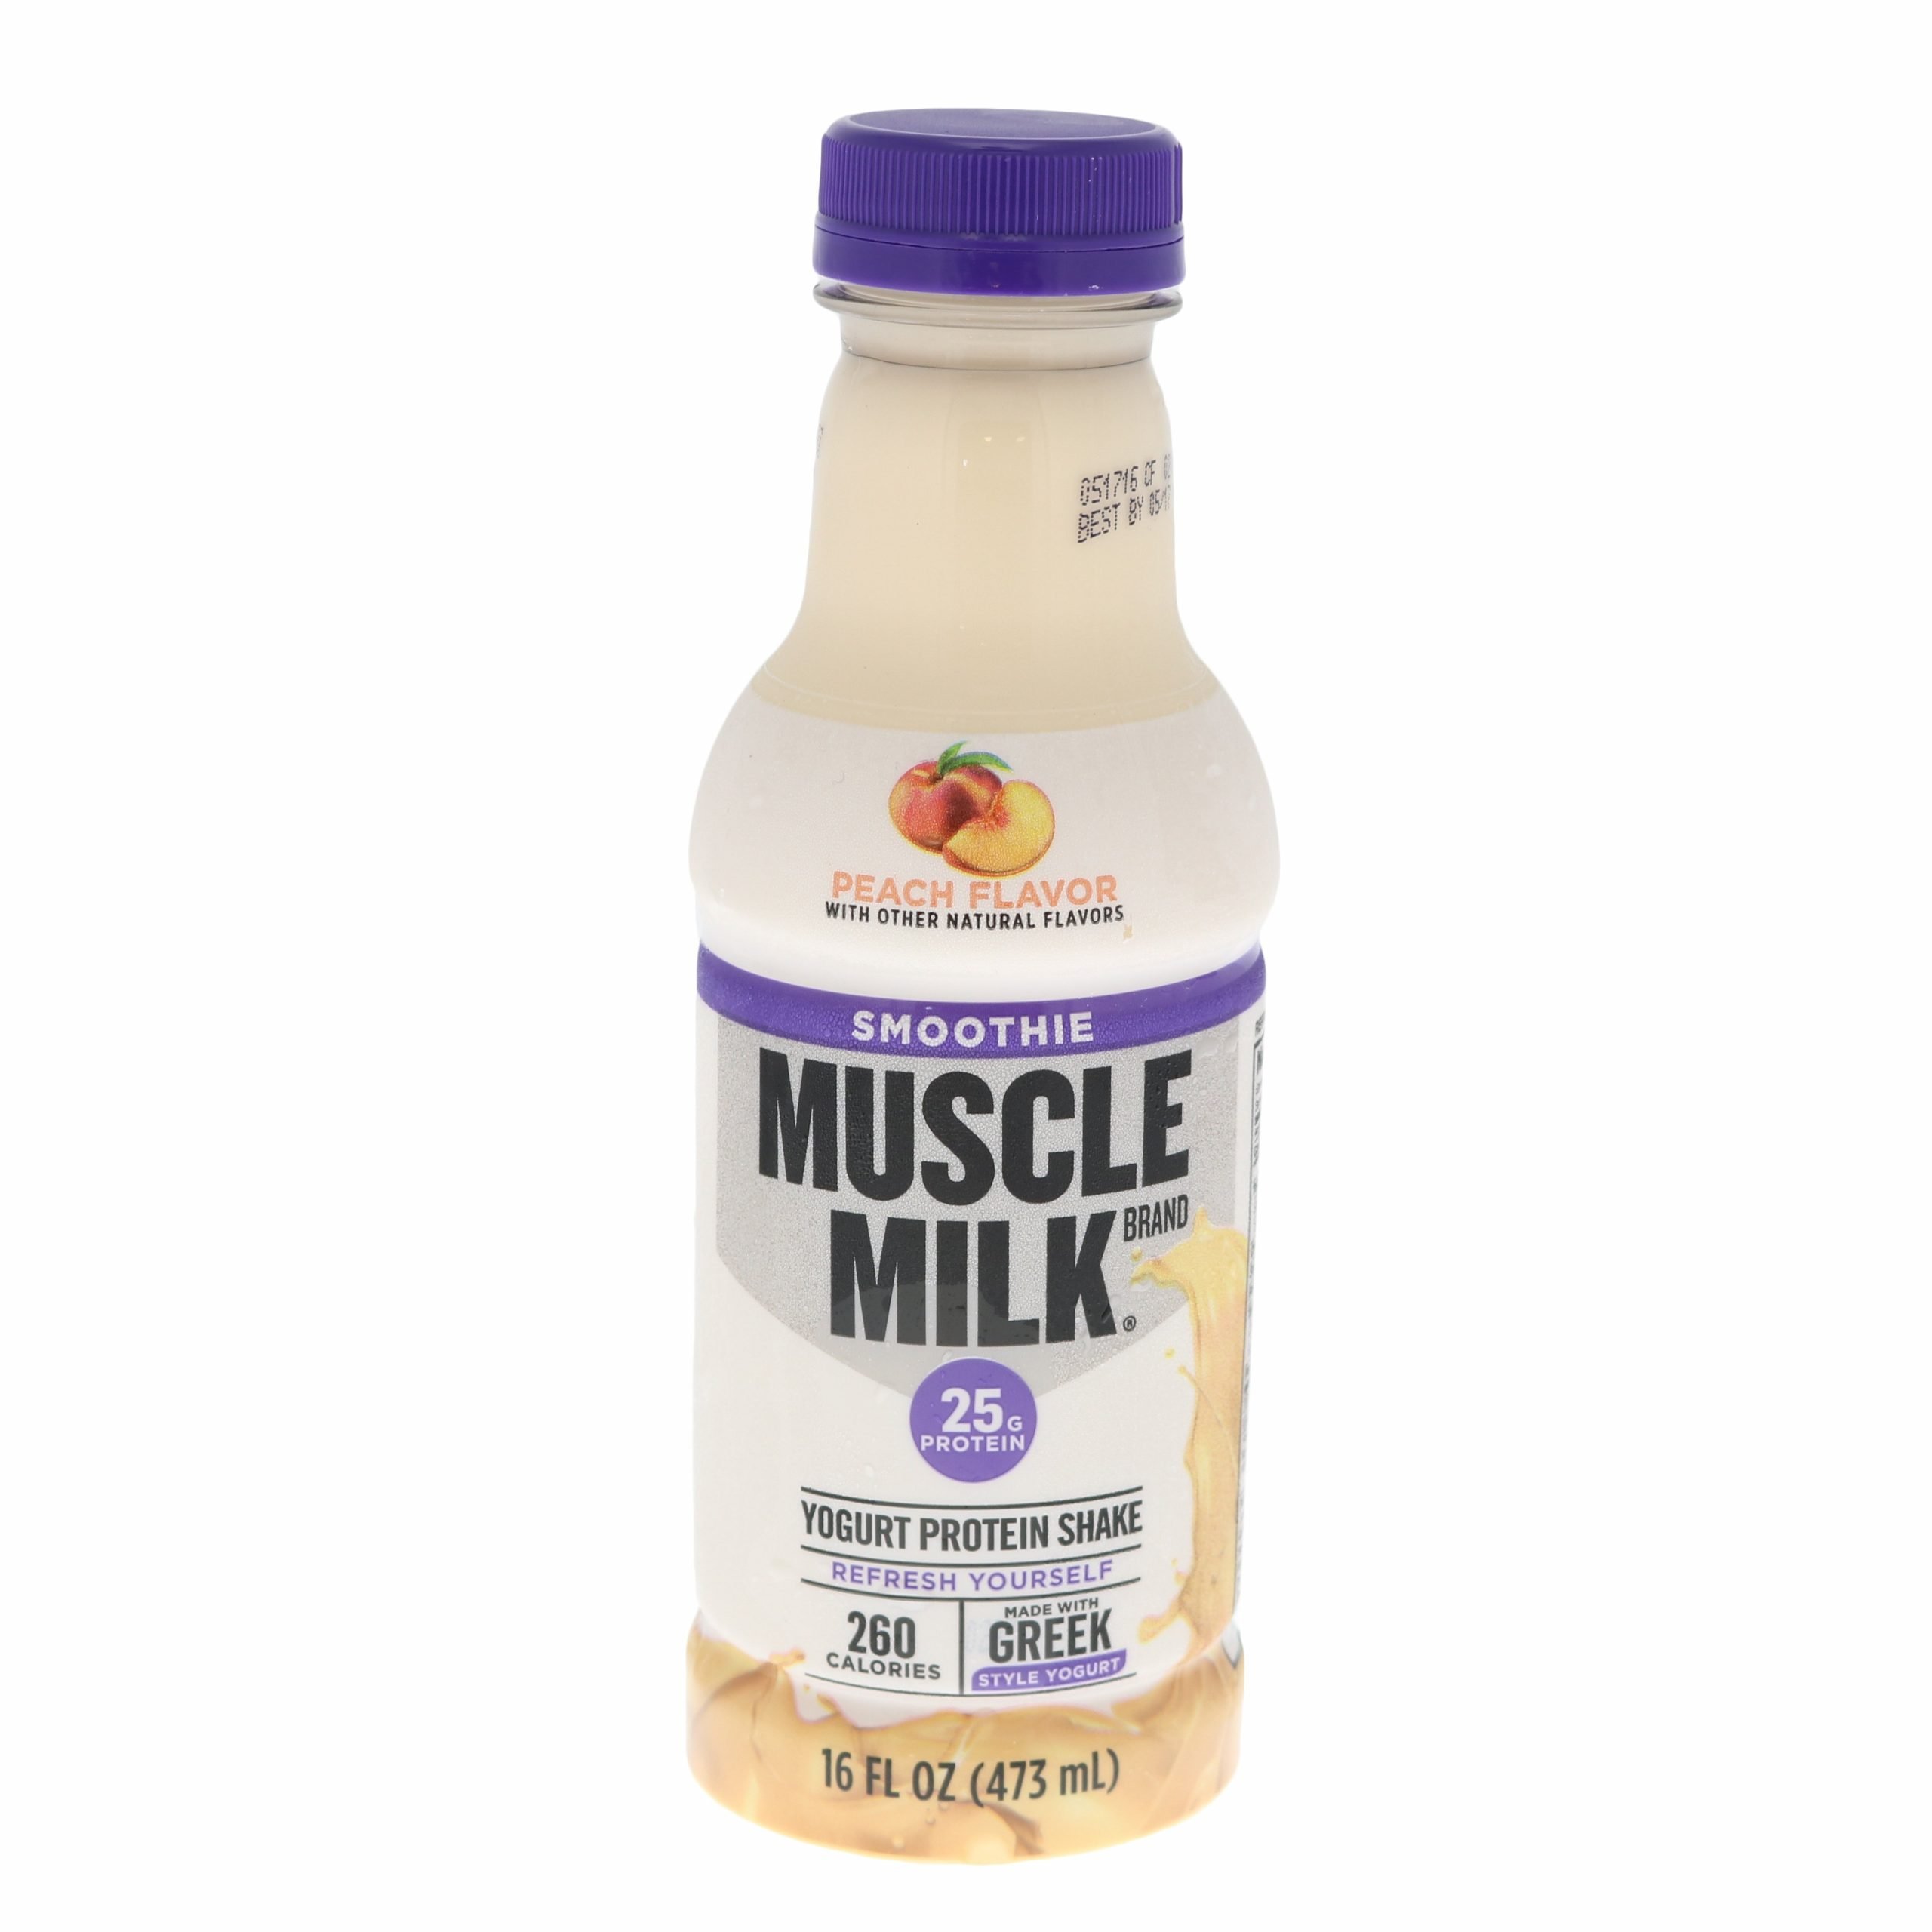 Muscle Milk Smoothie Peach Yogurt Protein Shake